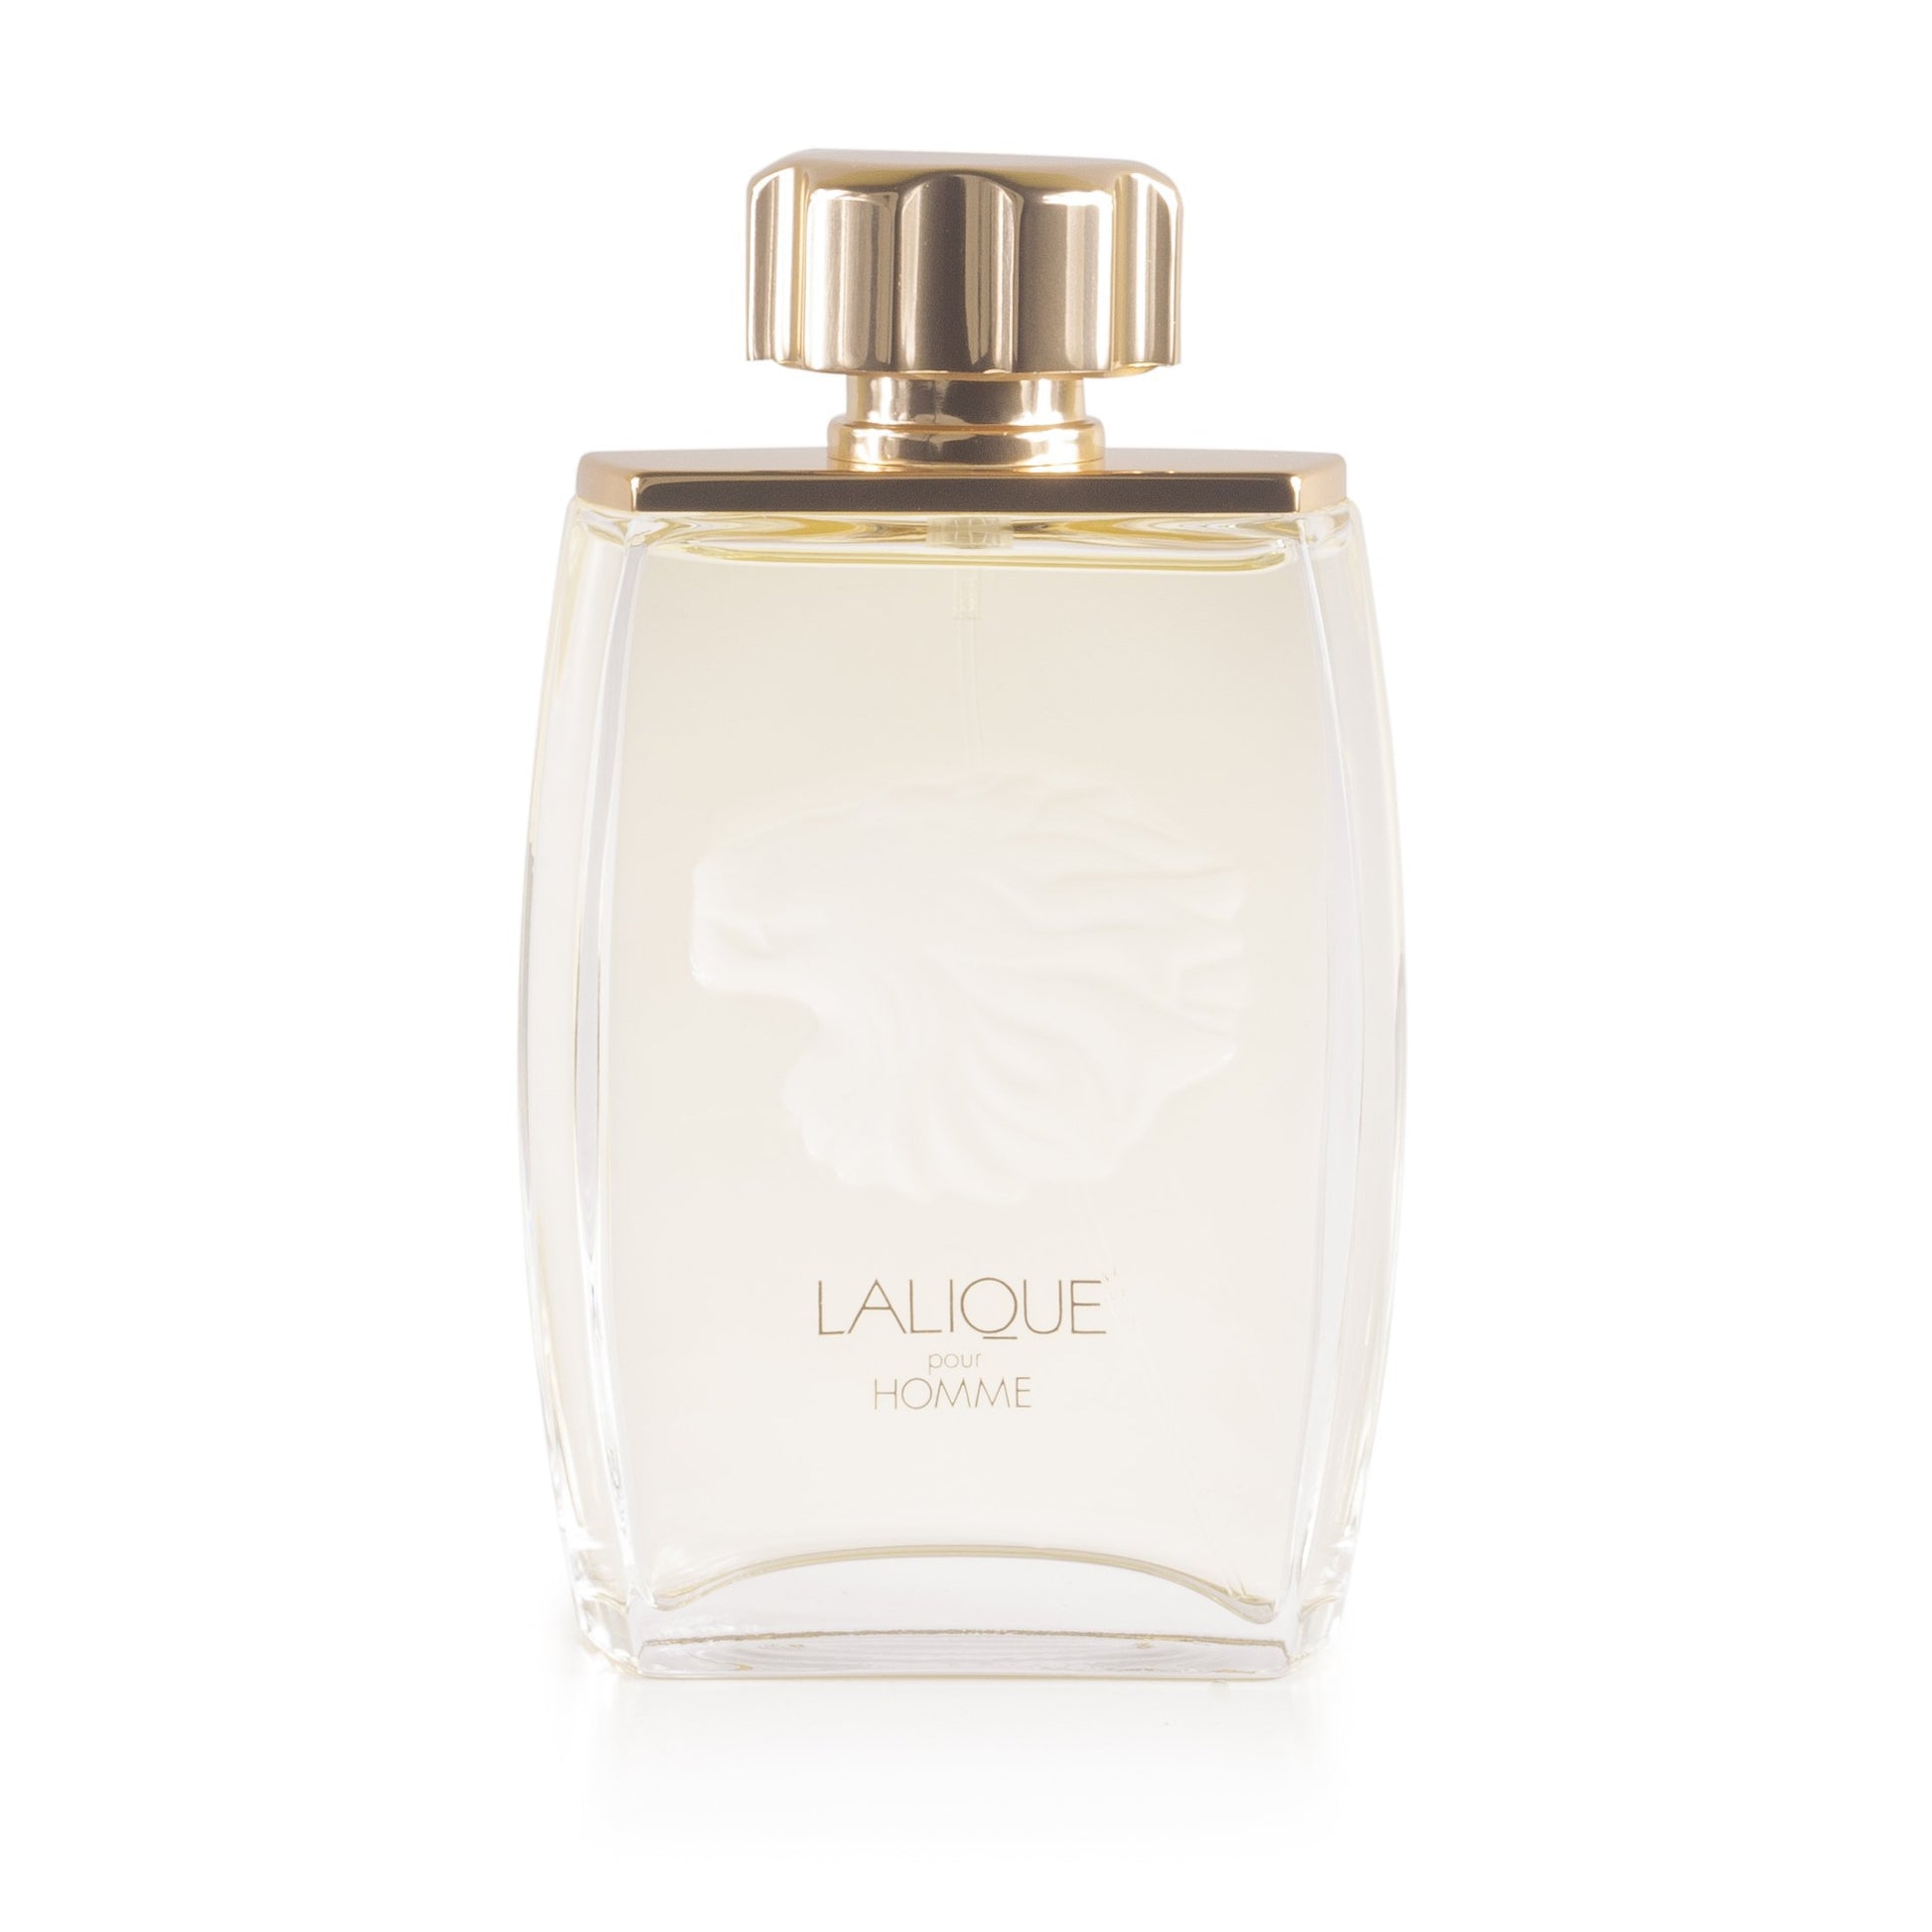 Pour Homme Eau de Parfum Spray for Men by Lalique, Product image 2